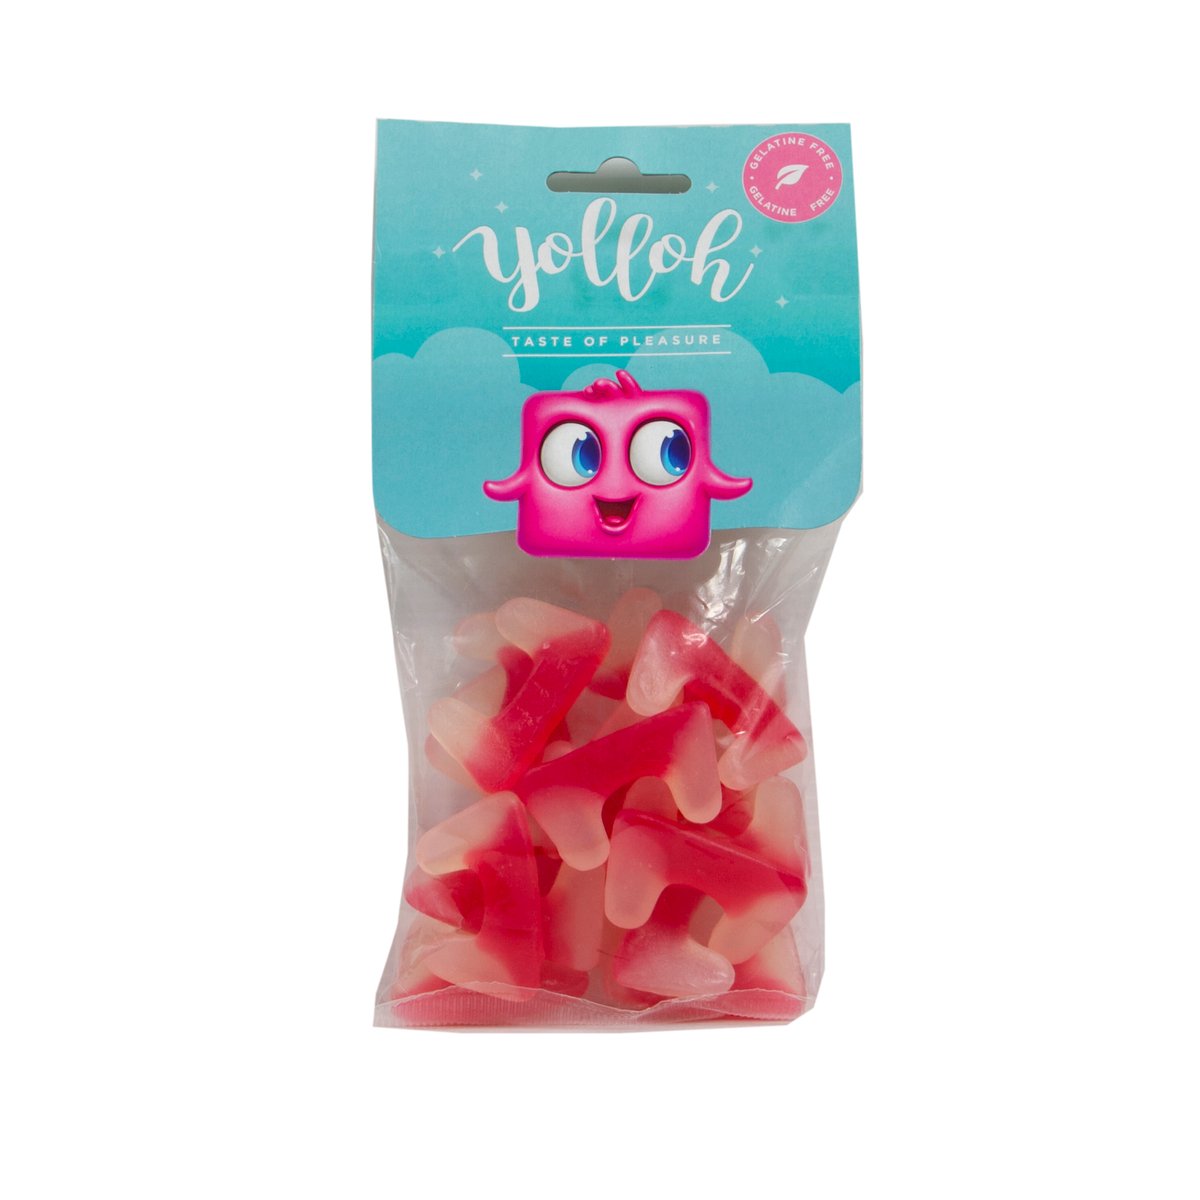 Yolloh Taste Of Pleasure Vampire Teeth 120g Online At Best Price Candy Bags Lulu Ksa Price 1208